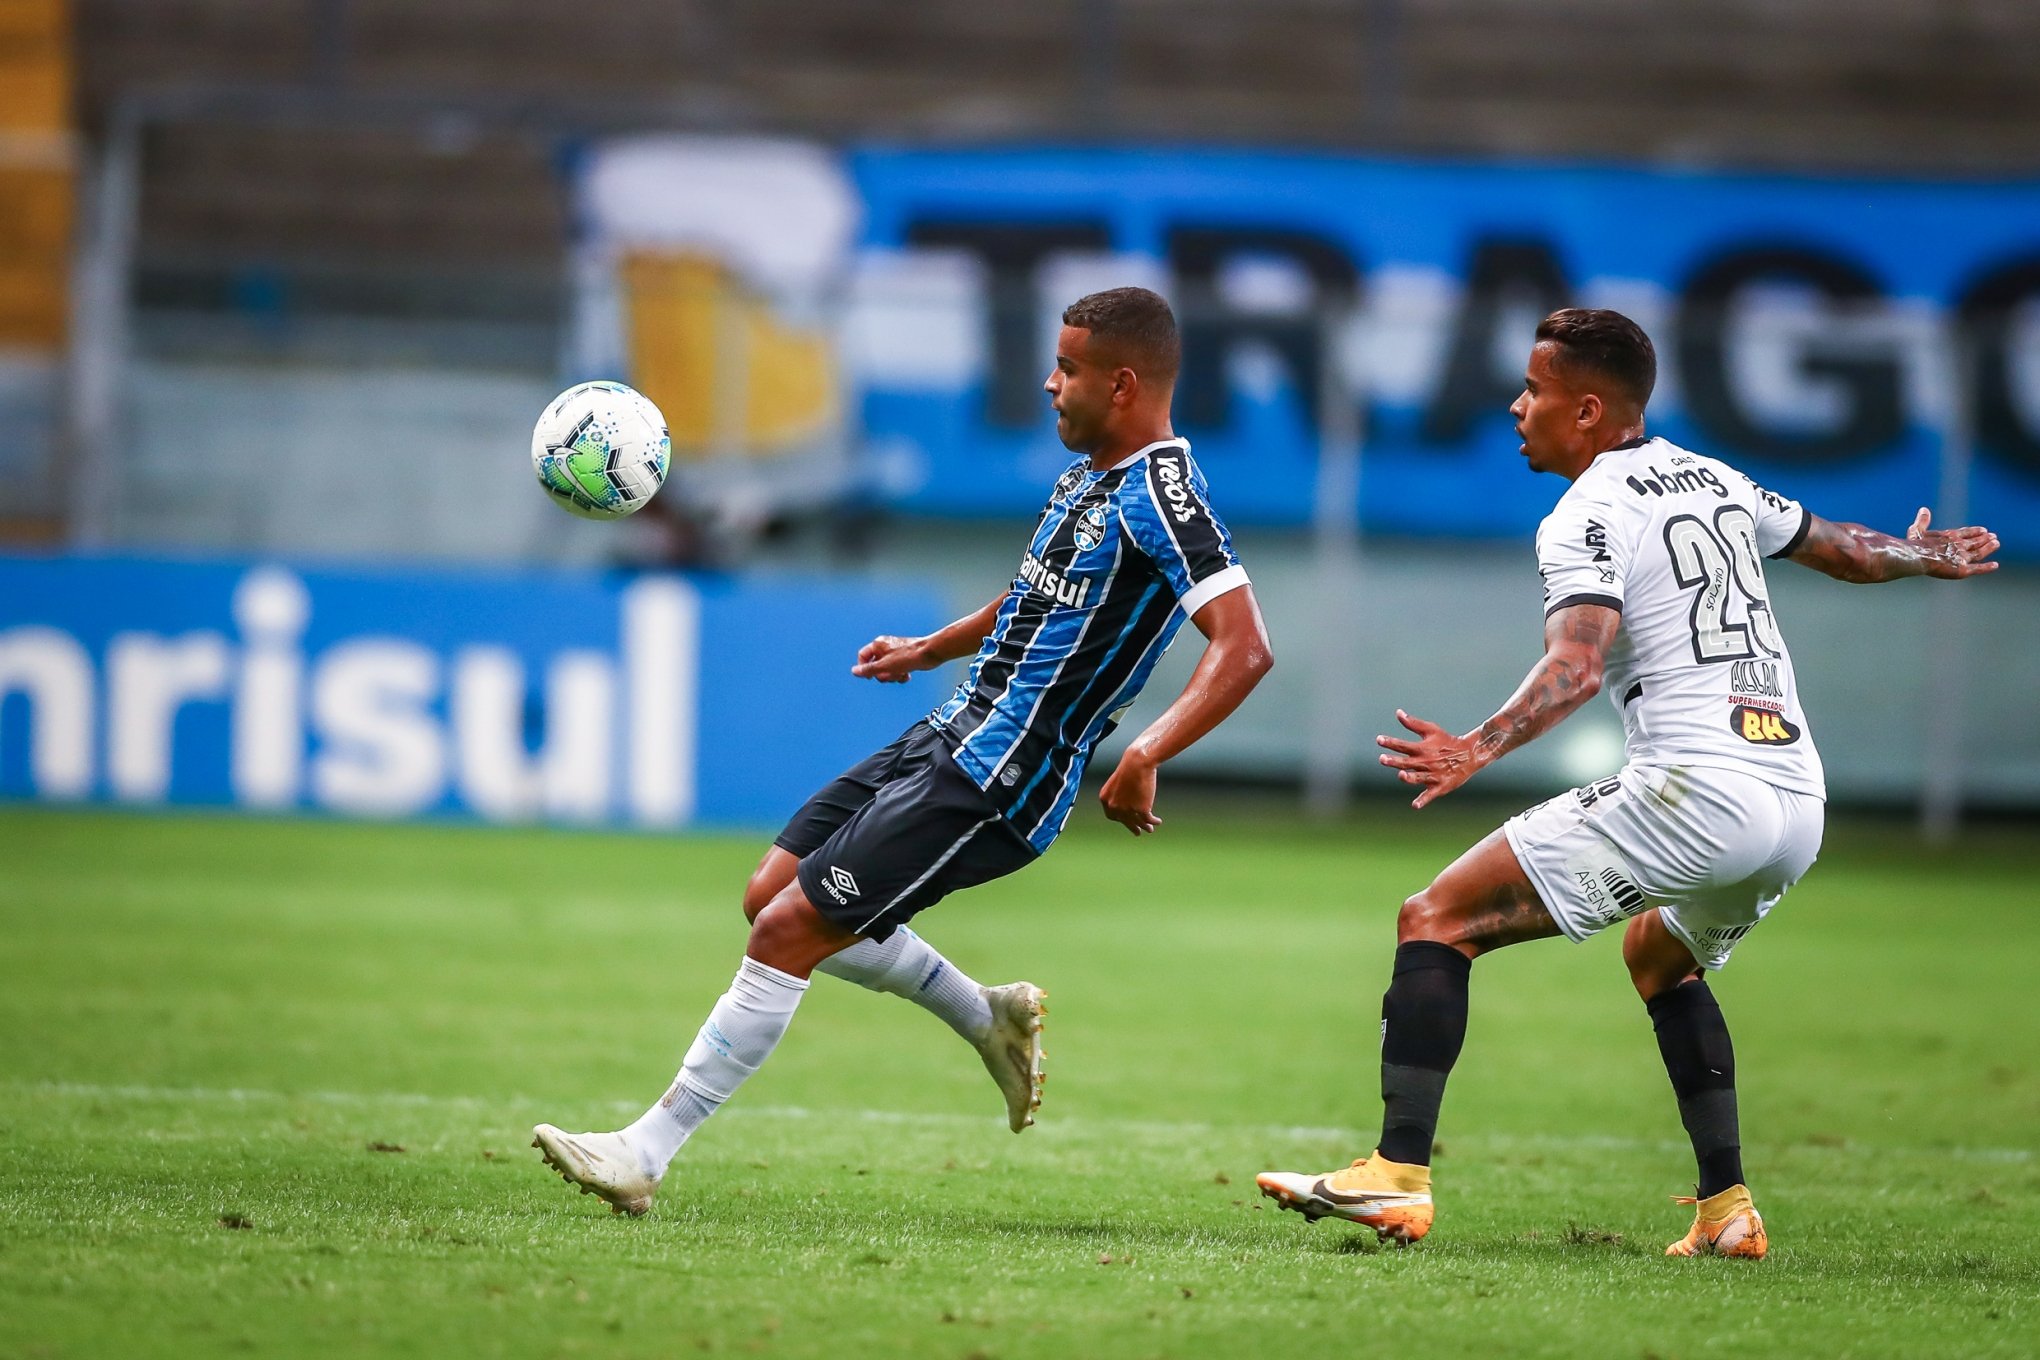 Inter empata o jogo com o Grêmio, agora 1 a 1 na Arena pelo Brasileirão -  Esportes - Diário de Canoas